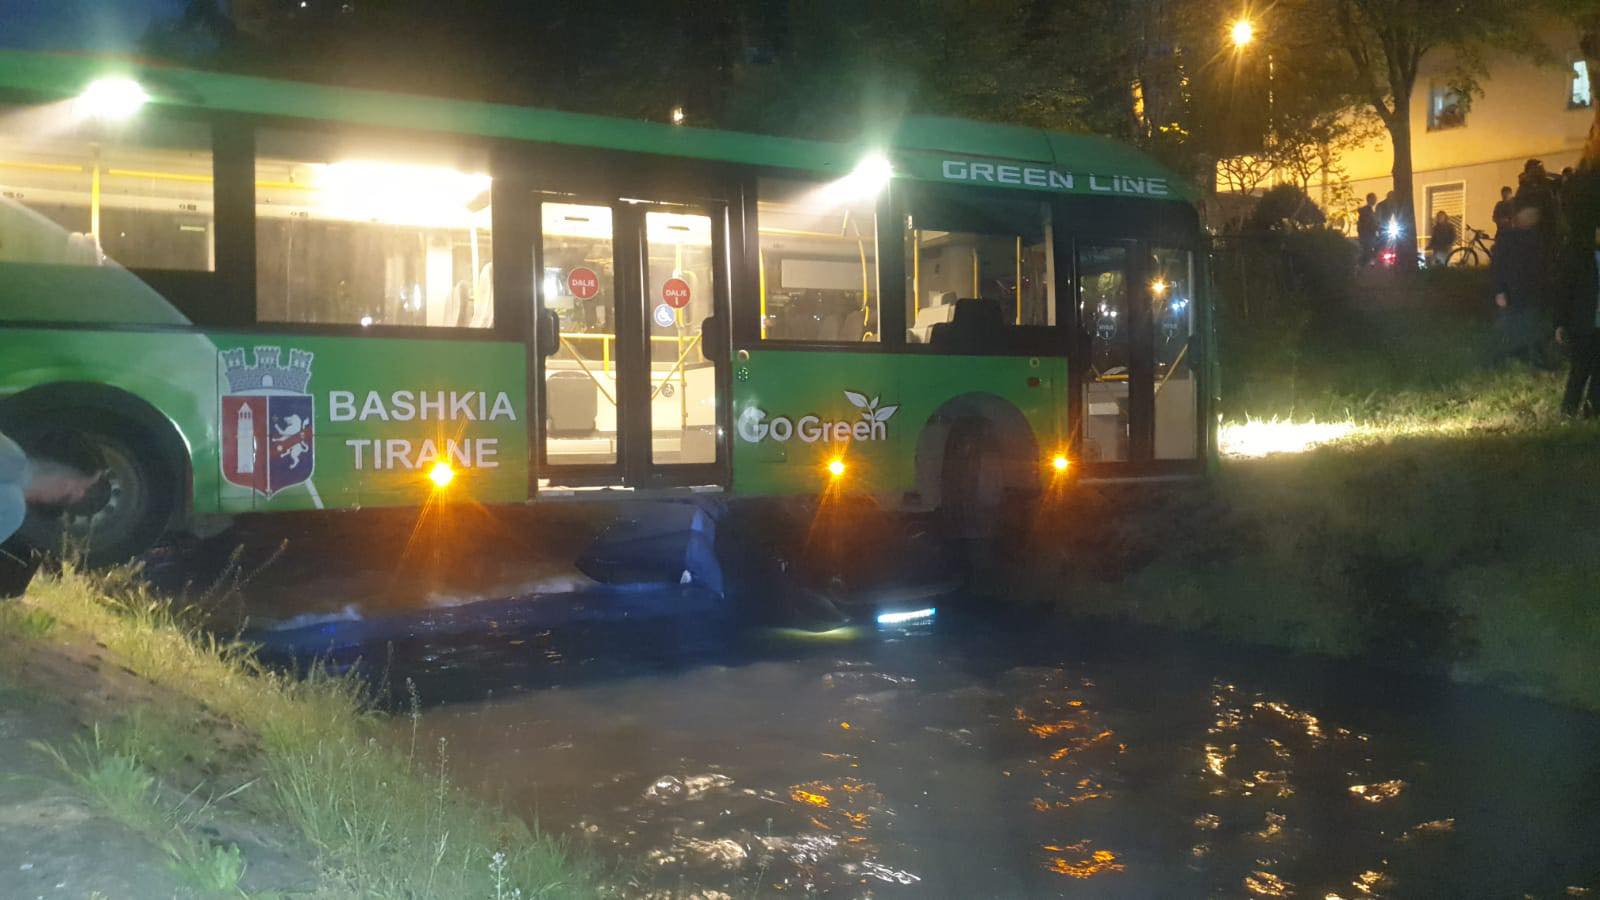 NDODH NË TIRANË! Autobusi i UNAZËS përplaset me makinën, përfundojnë të dy në Lanë